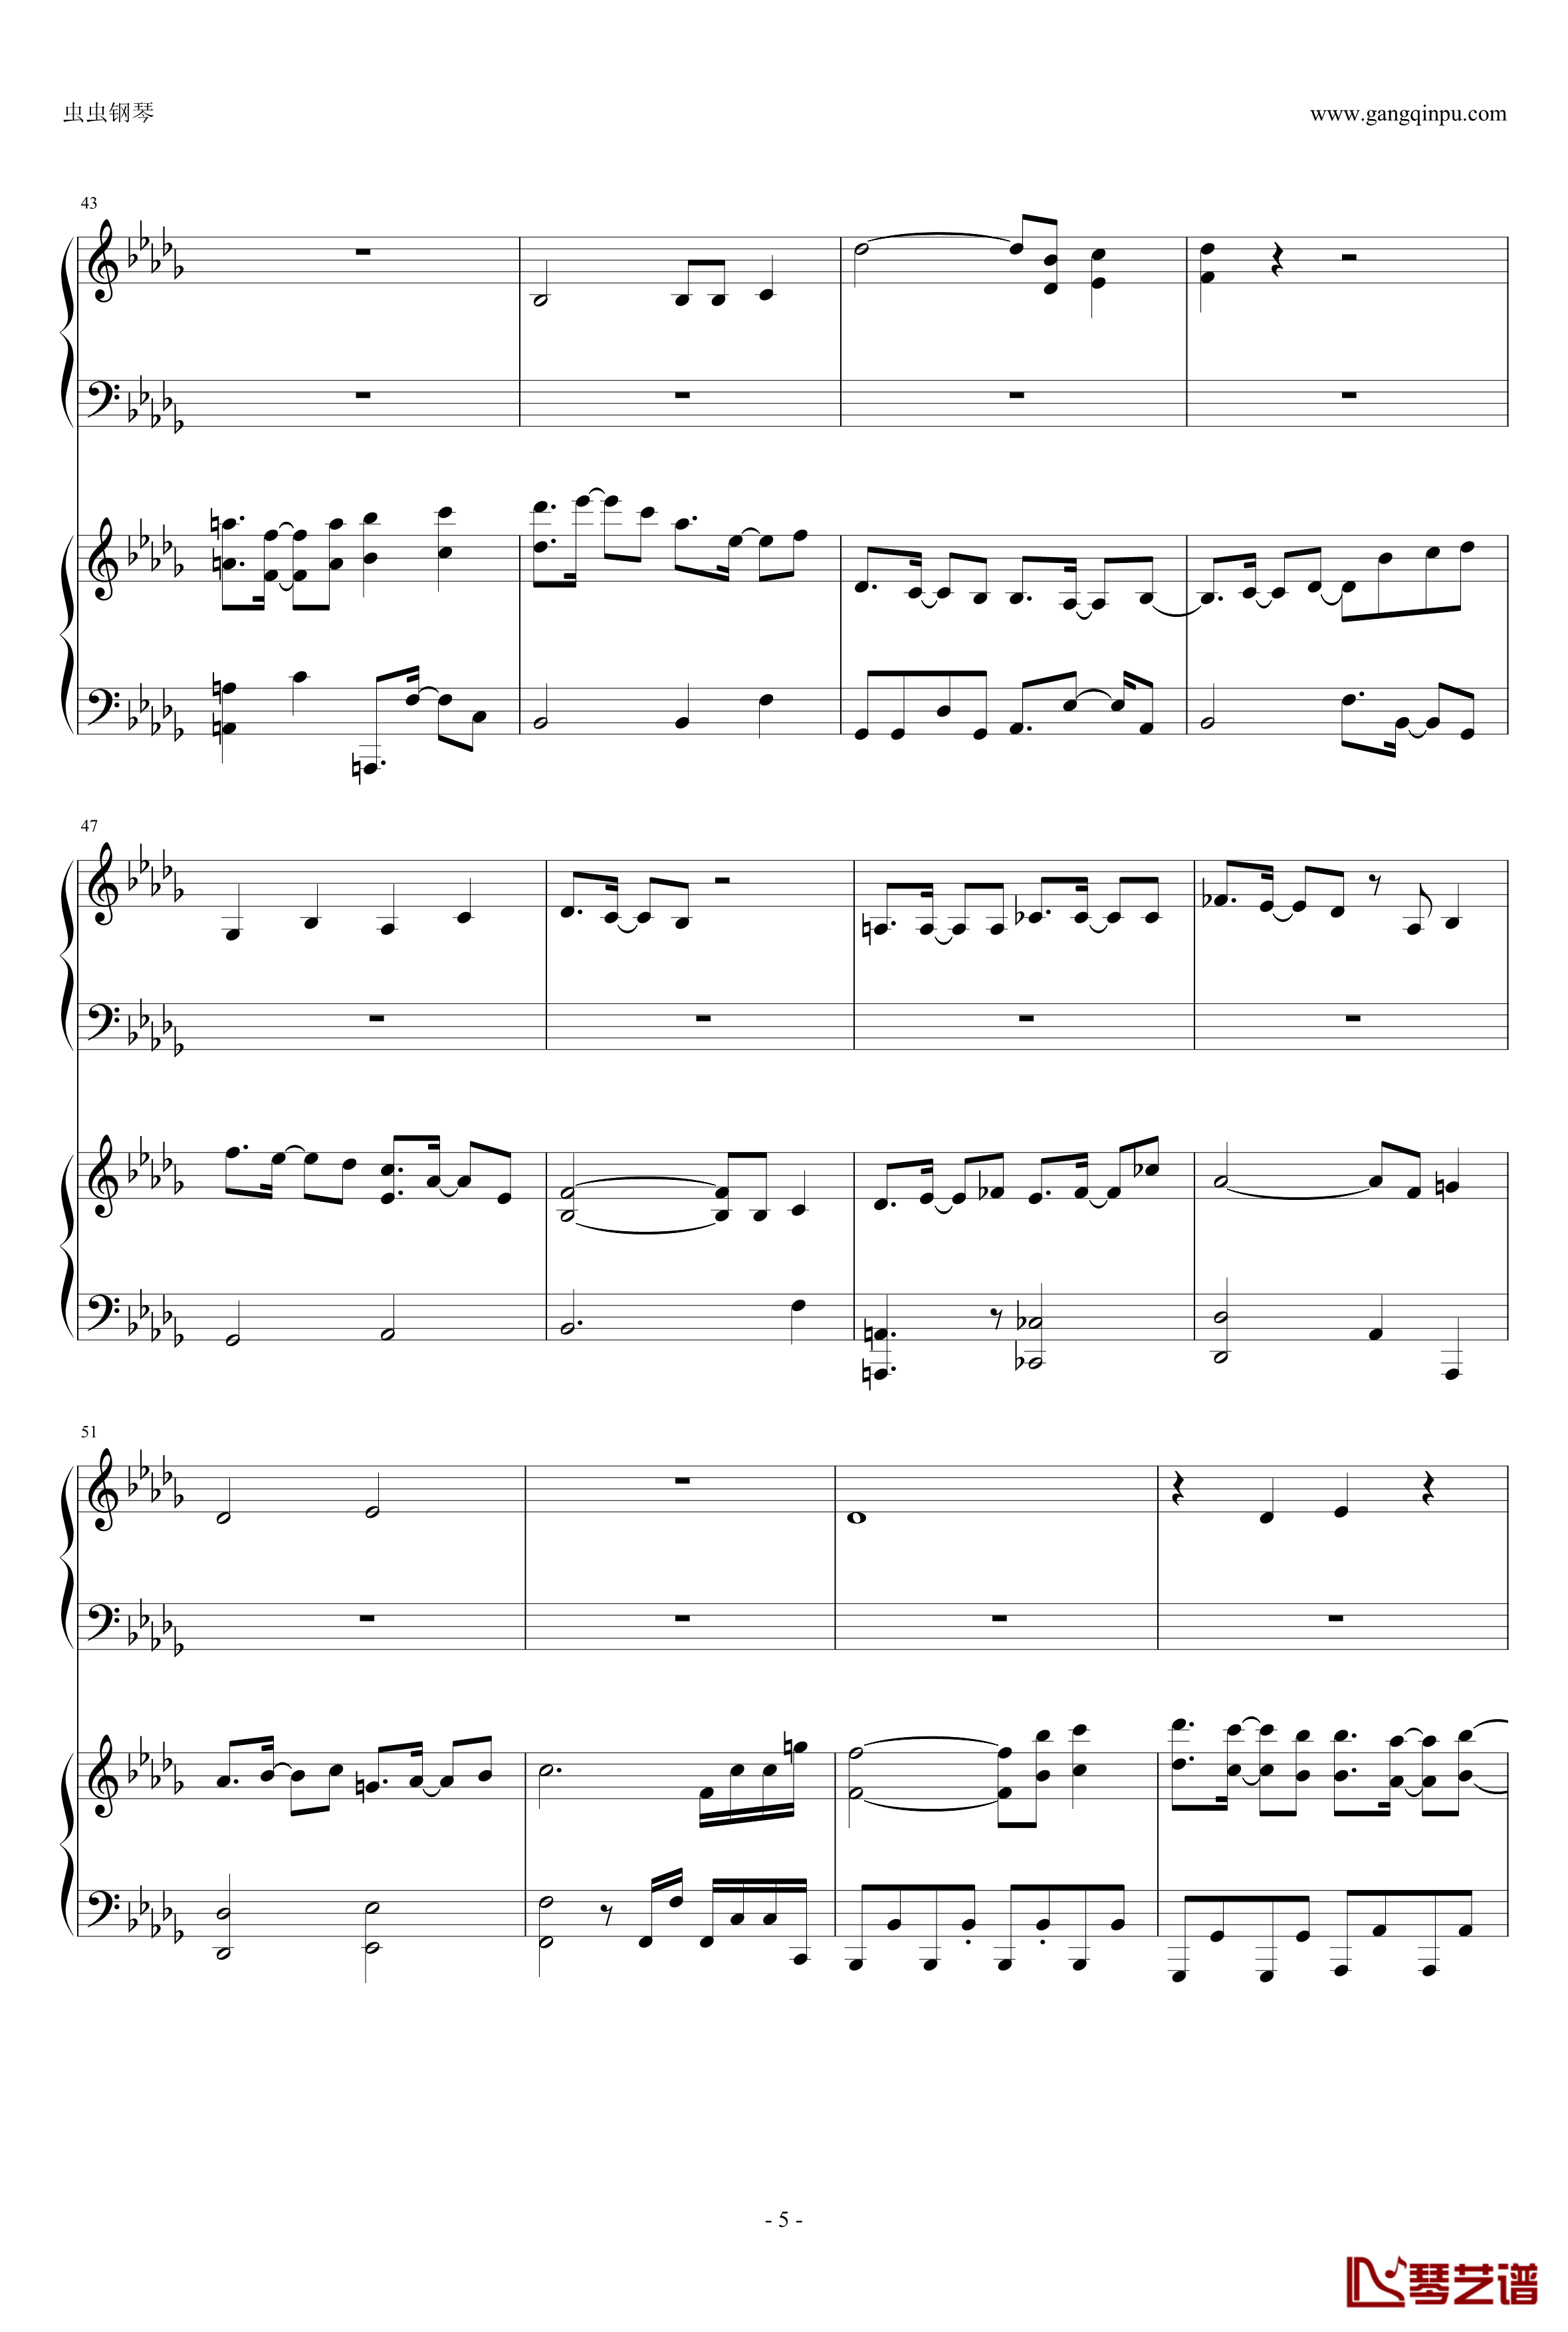 東方連奏曲II Pianoforte钢琴谱-第一部分-东方project5